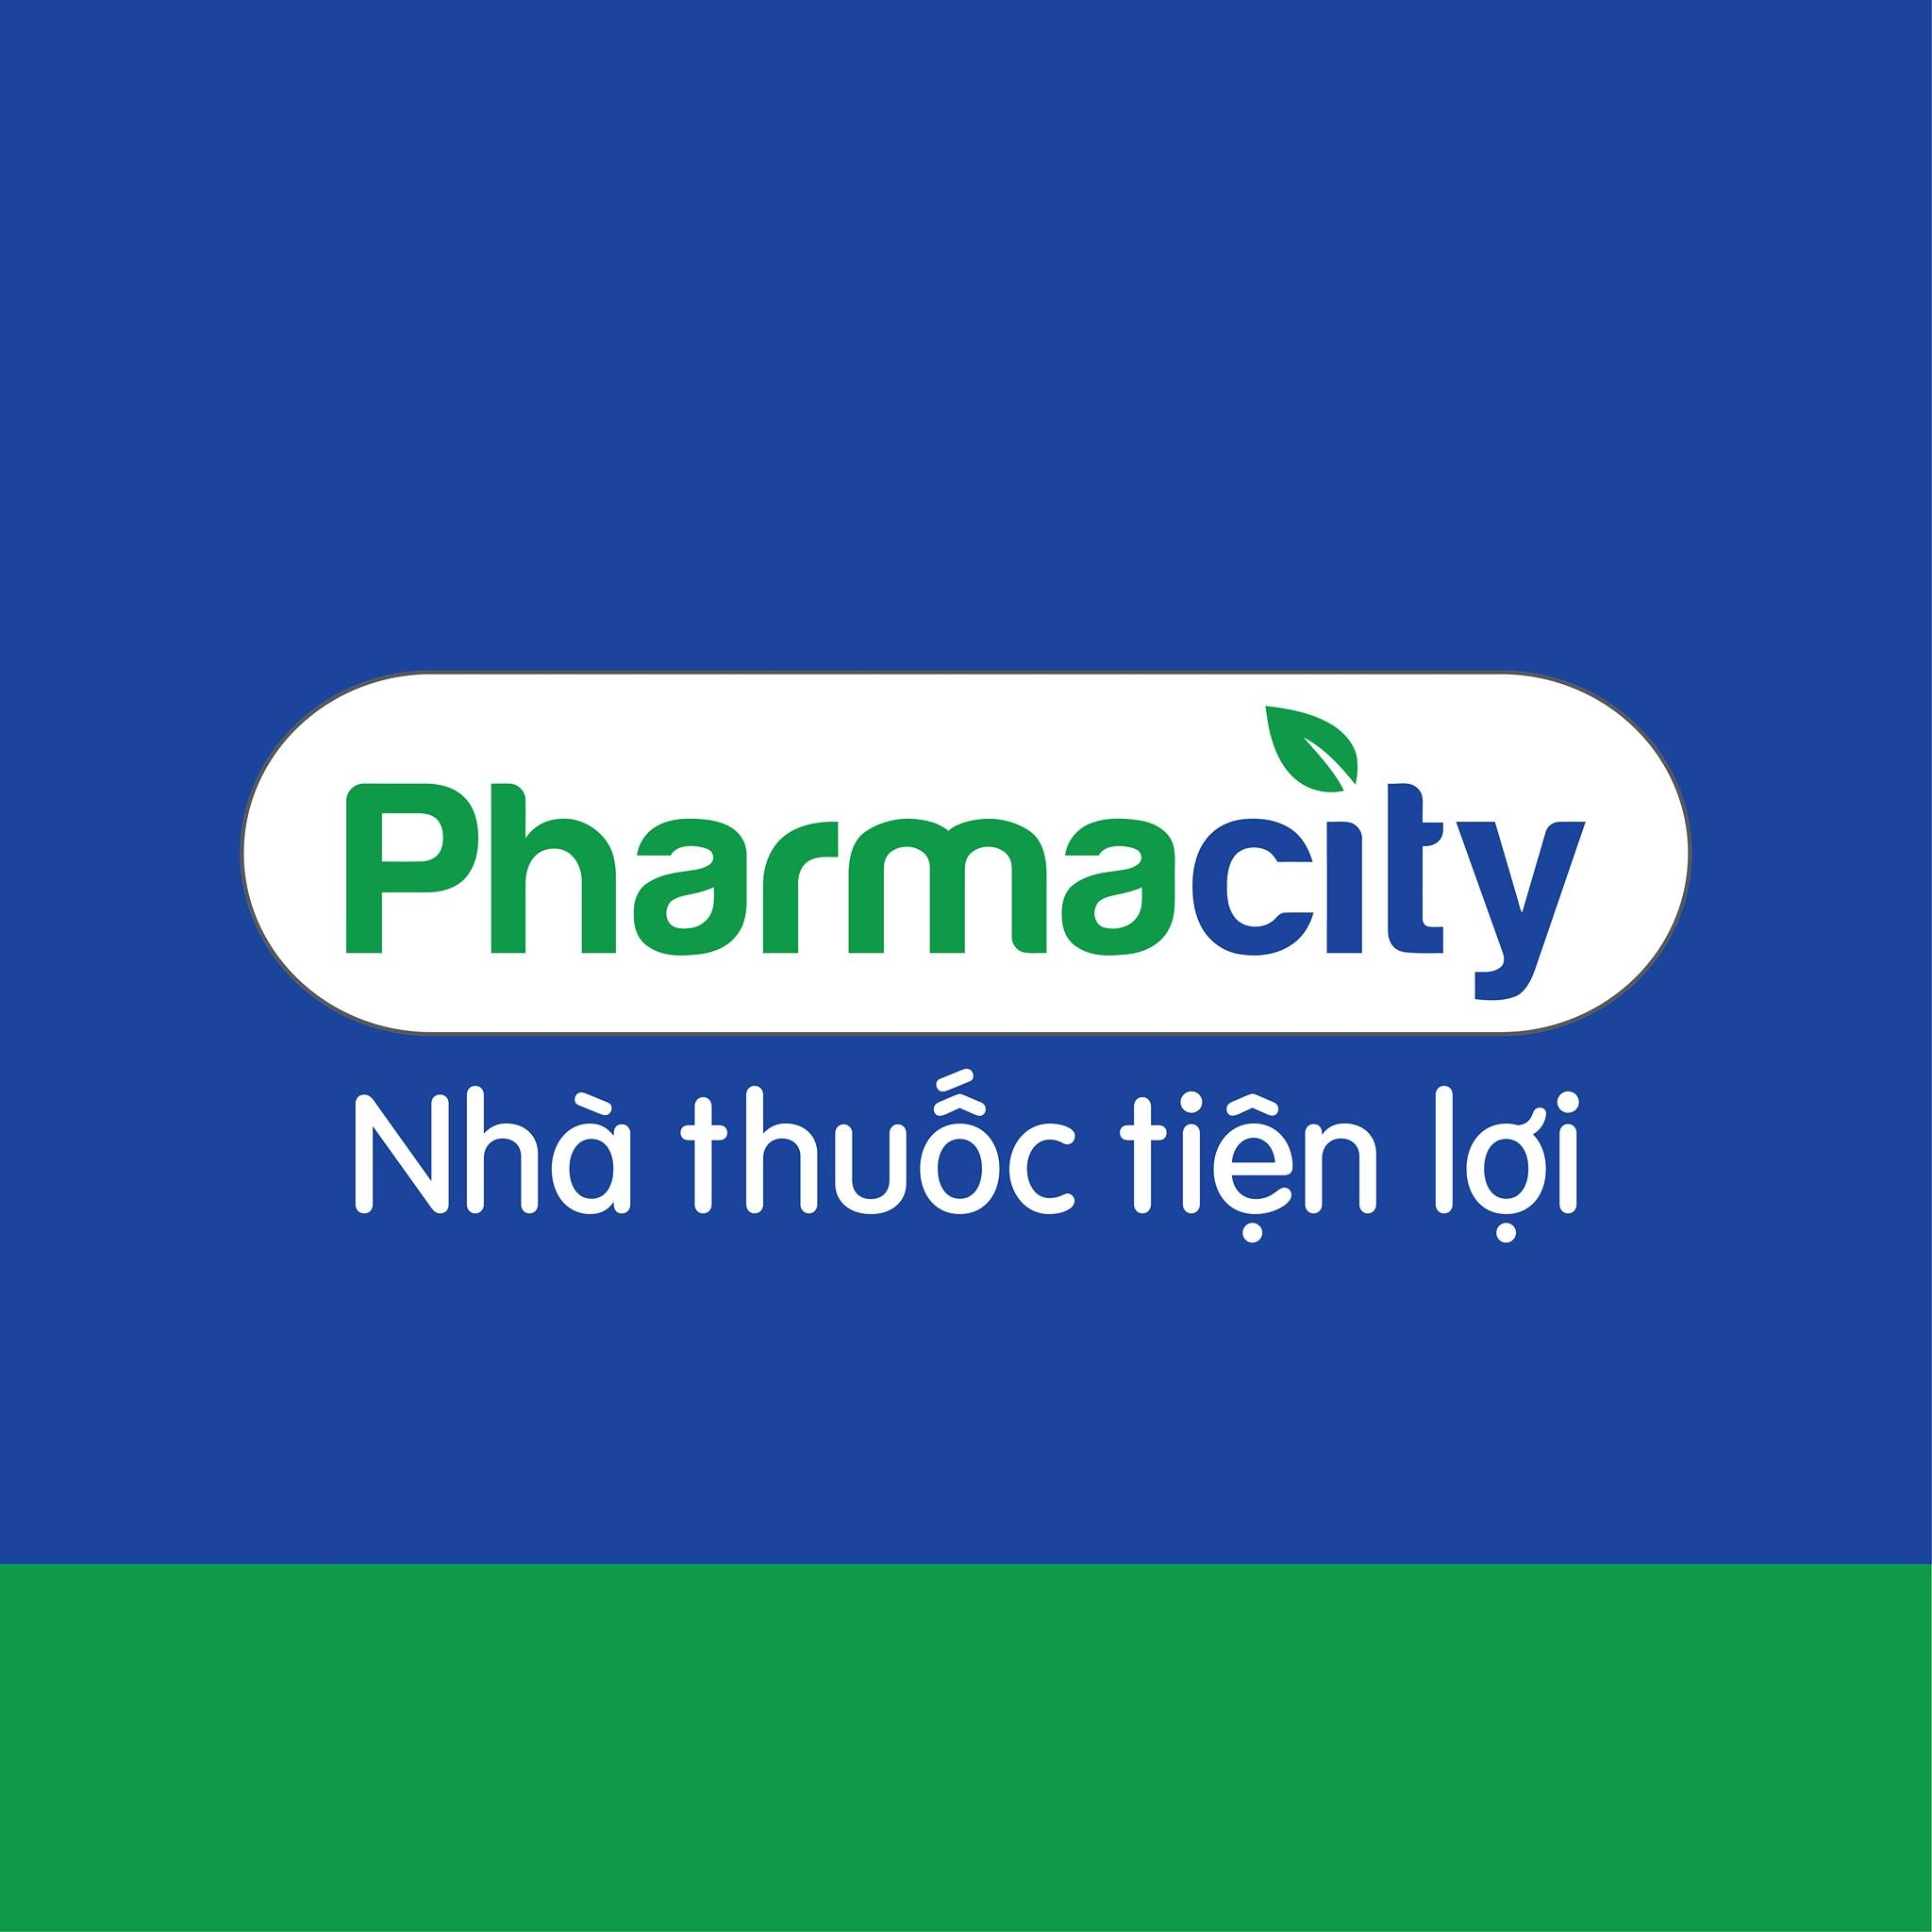 PharmaCity tuyển dụng nhân viên an ninh